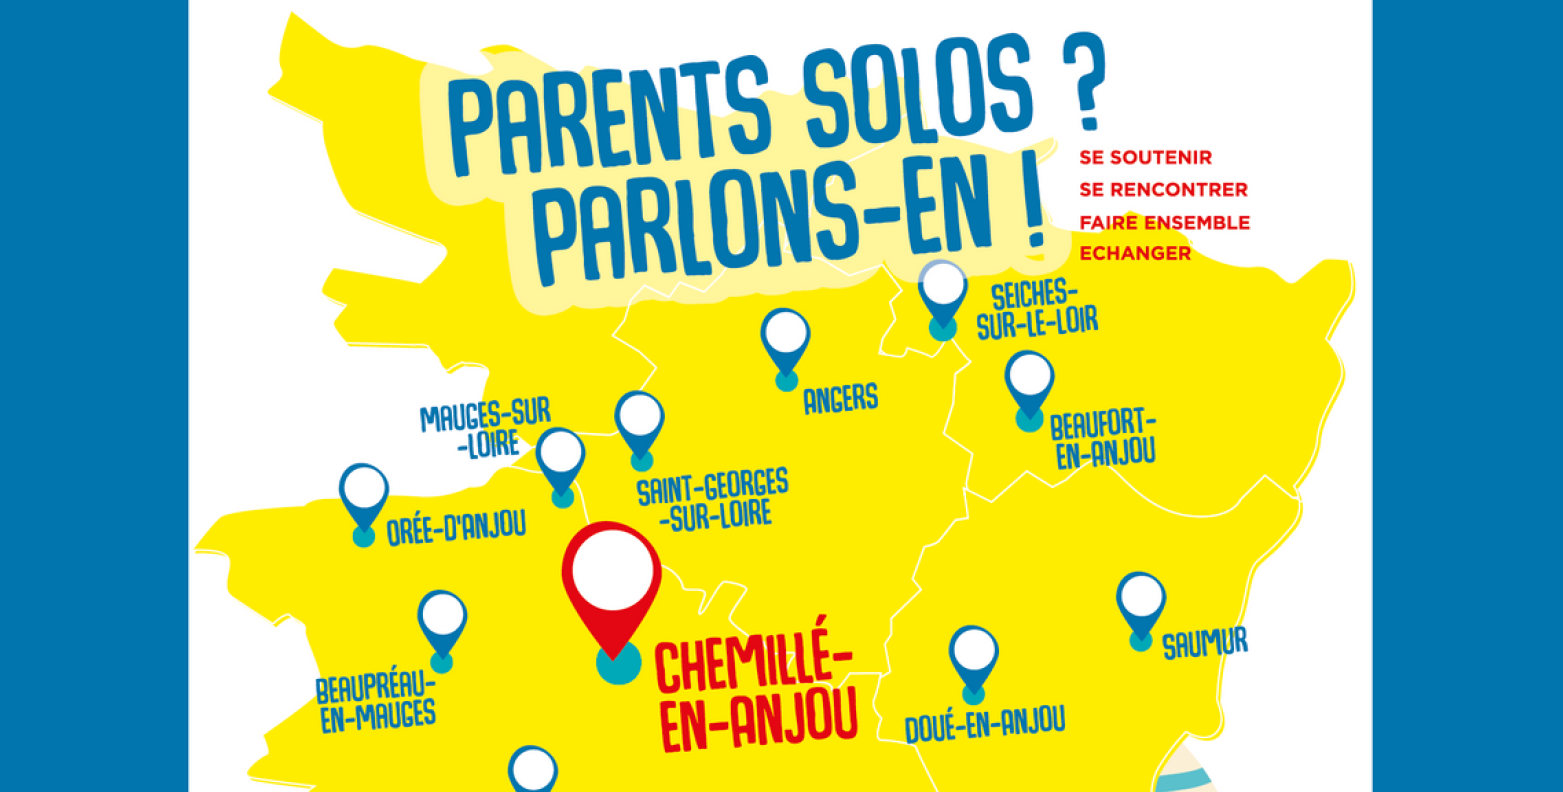 Journée départementale Parents solos 2022 Chemillé-en-Anjou